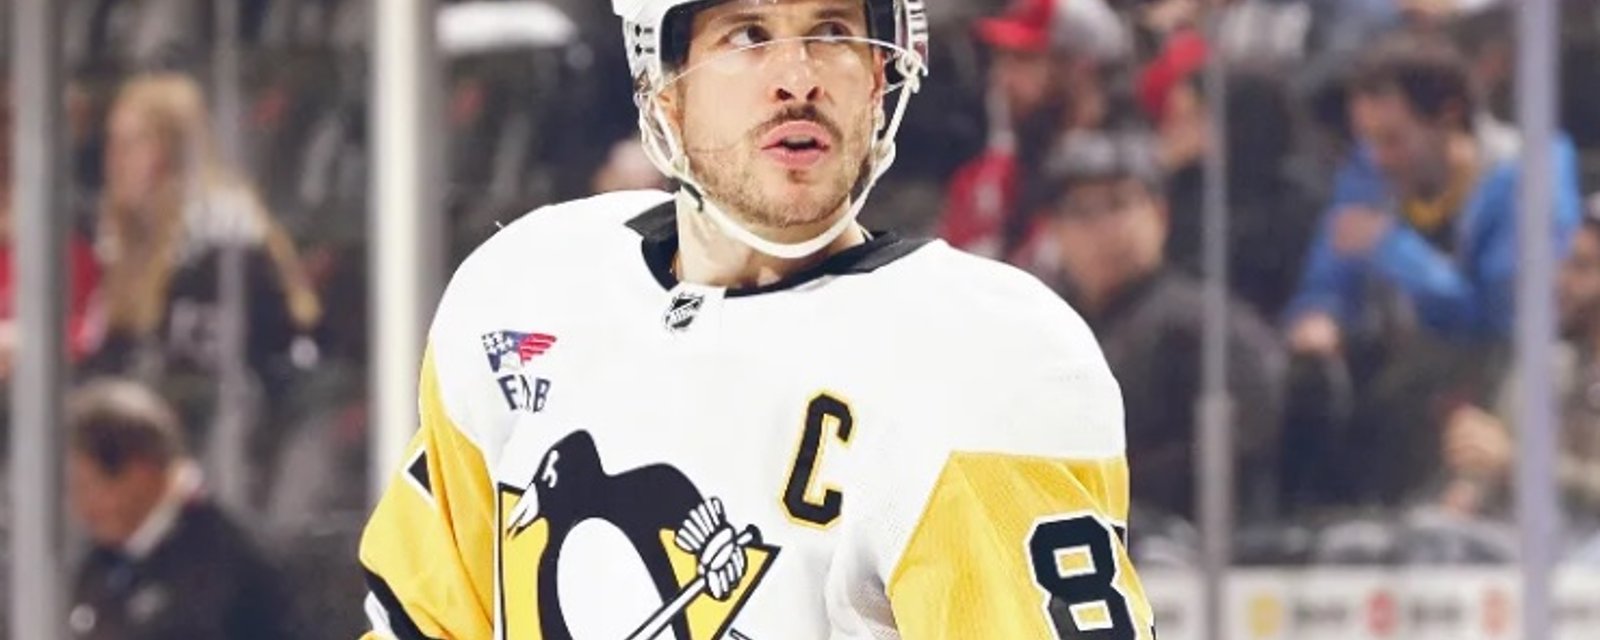 Les Penguins perdent un précieux point au classement en raison d'un bris d'équipement